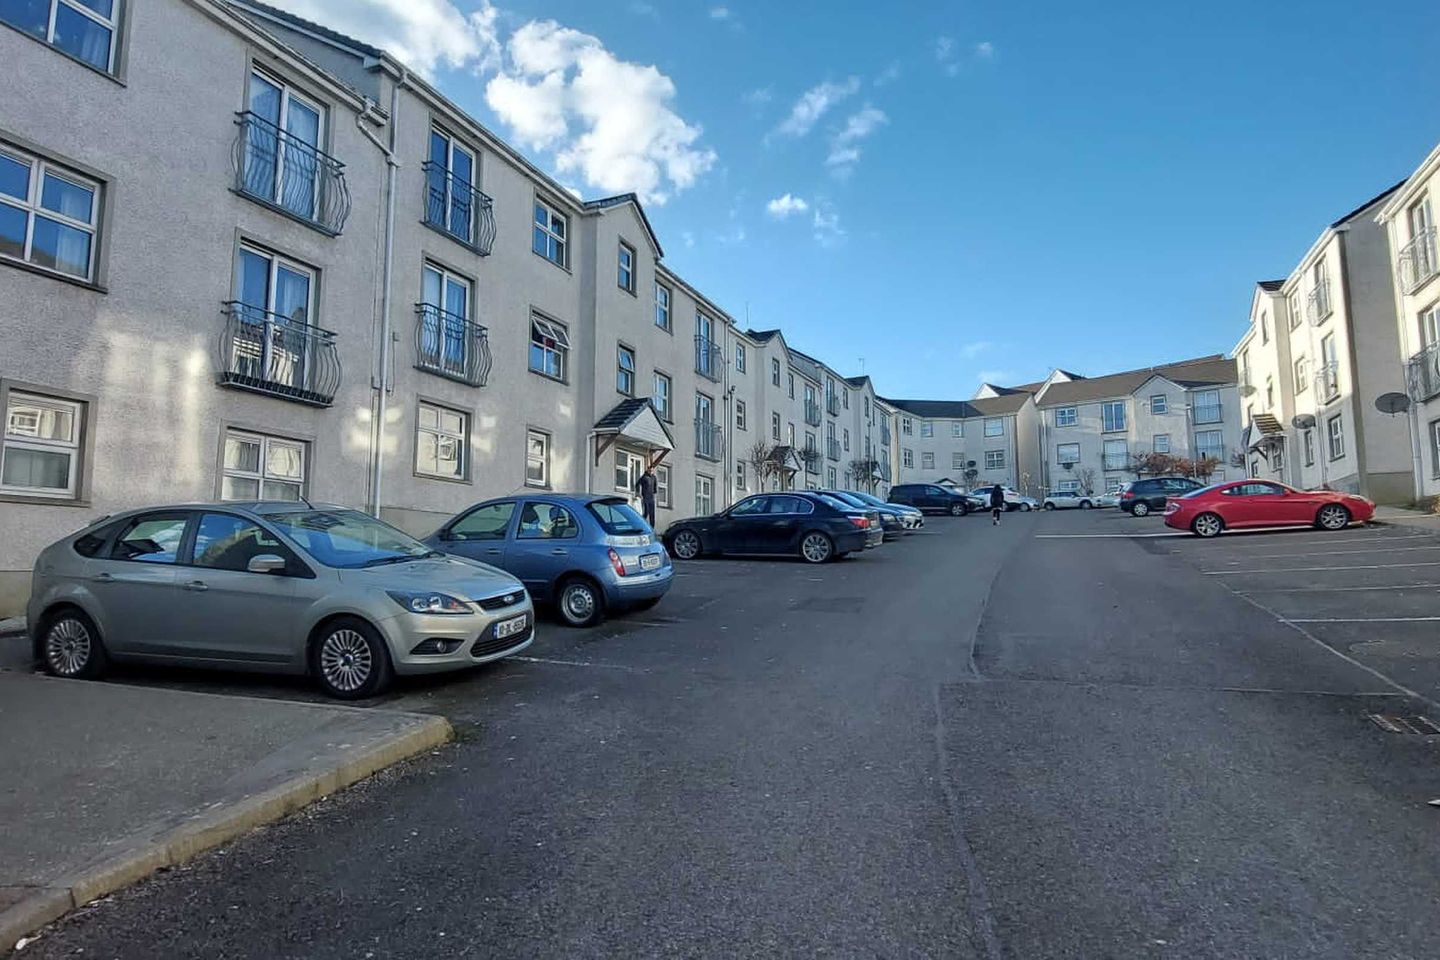 Burnside Apartments, Letterkenny, Co. Donegal